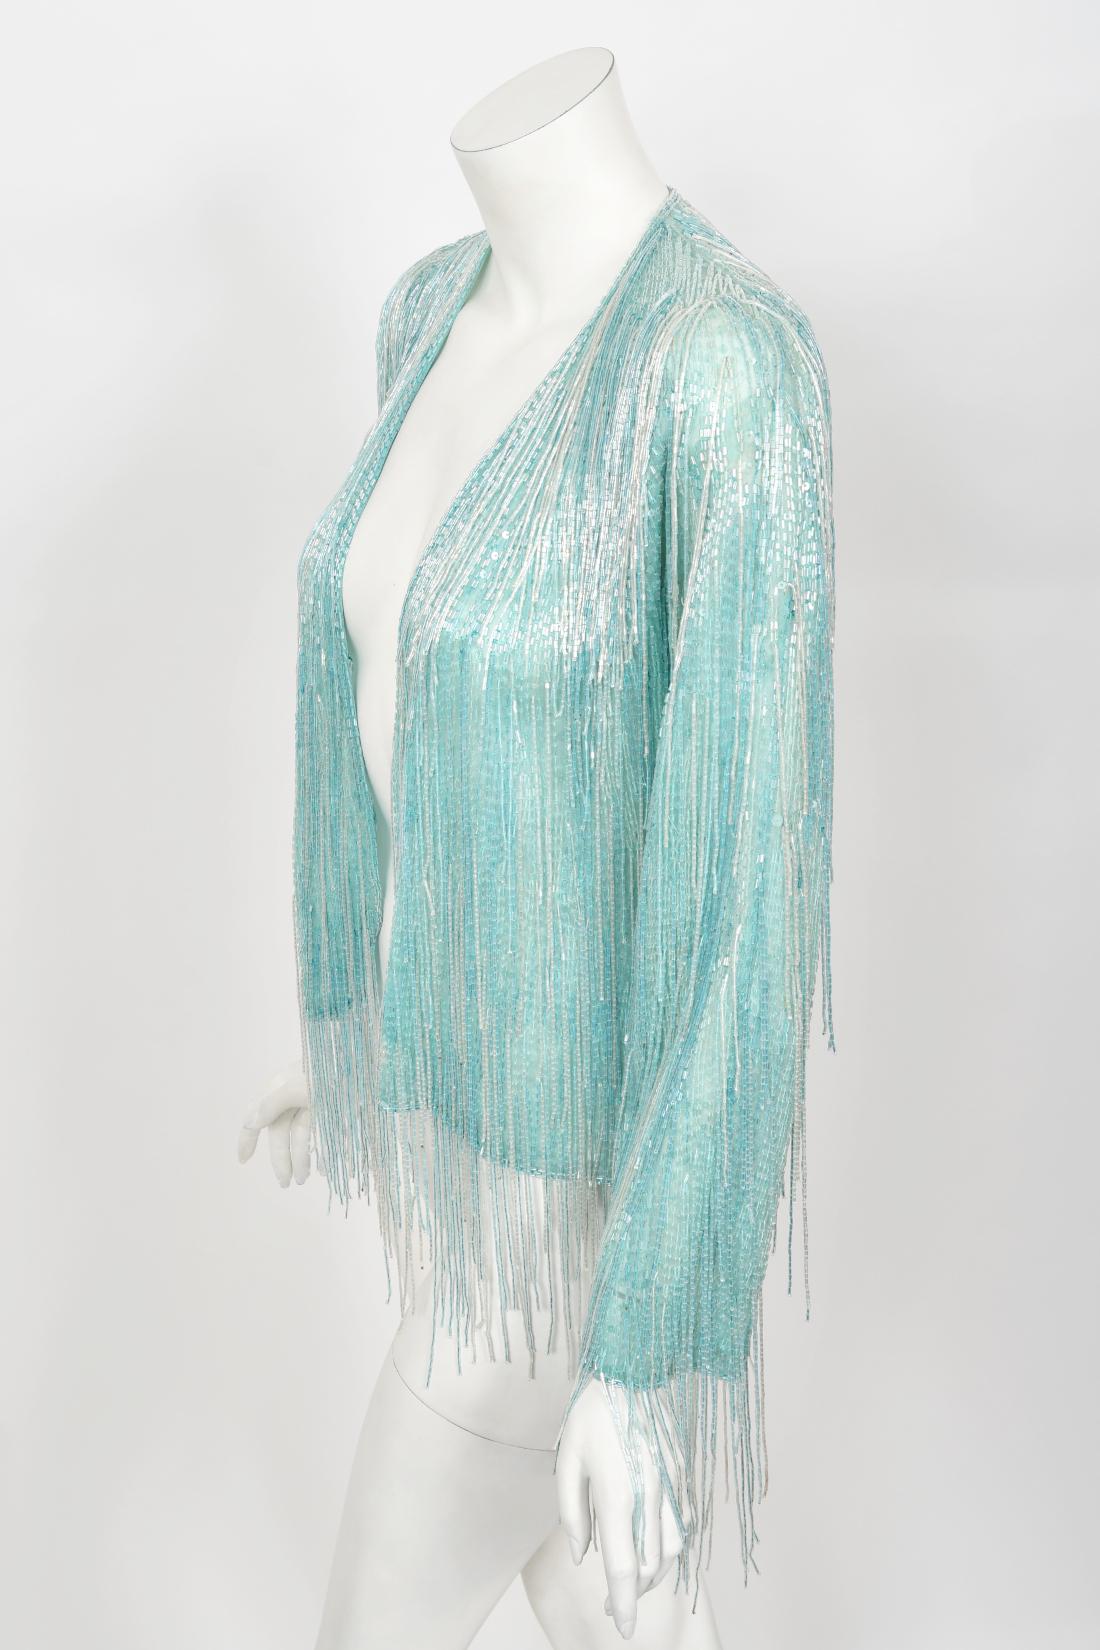 Halston Couture - Cardigan disco vintage à franges en soie perlée bleu glace, années 1970 4